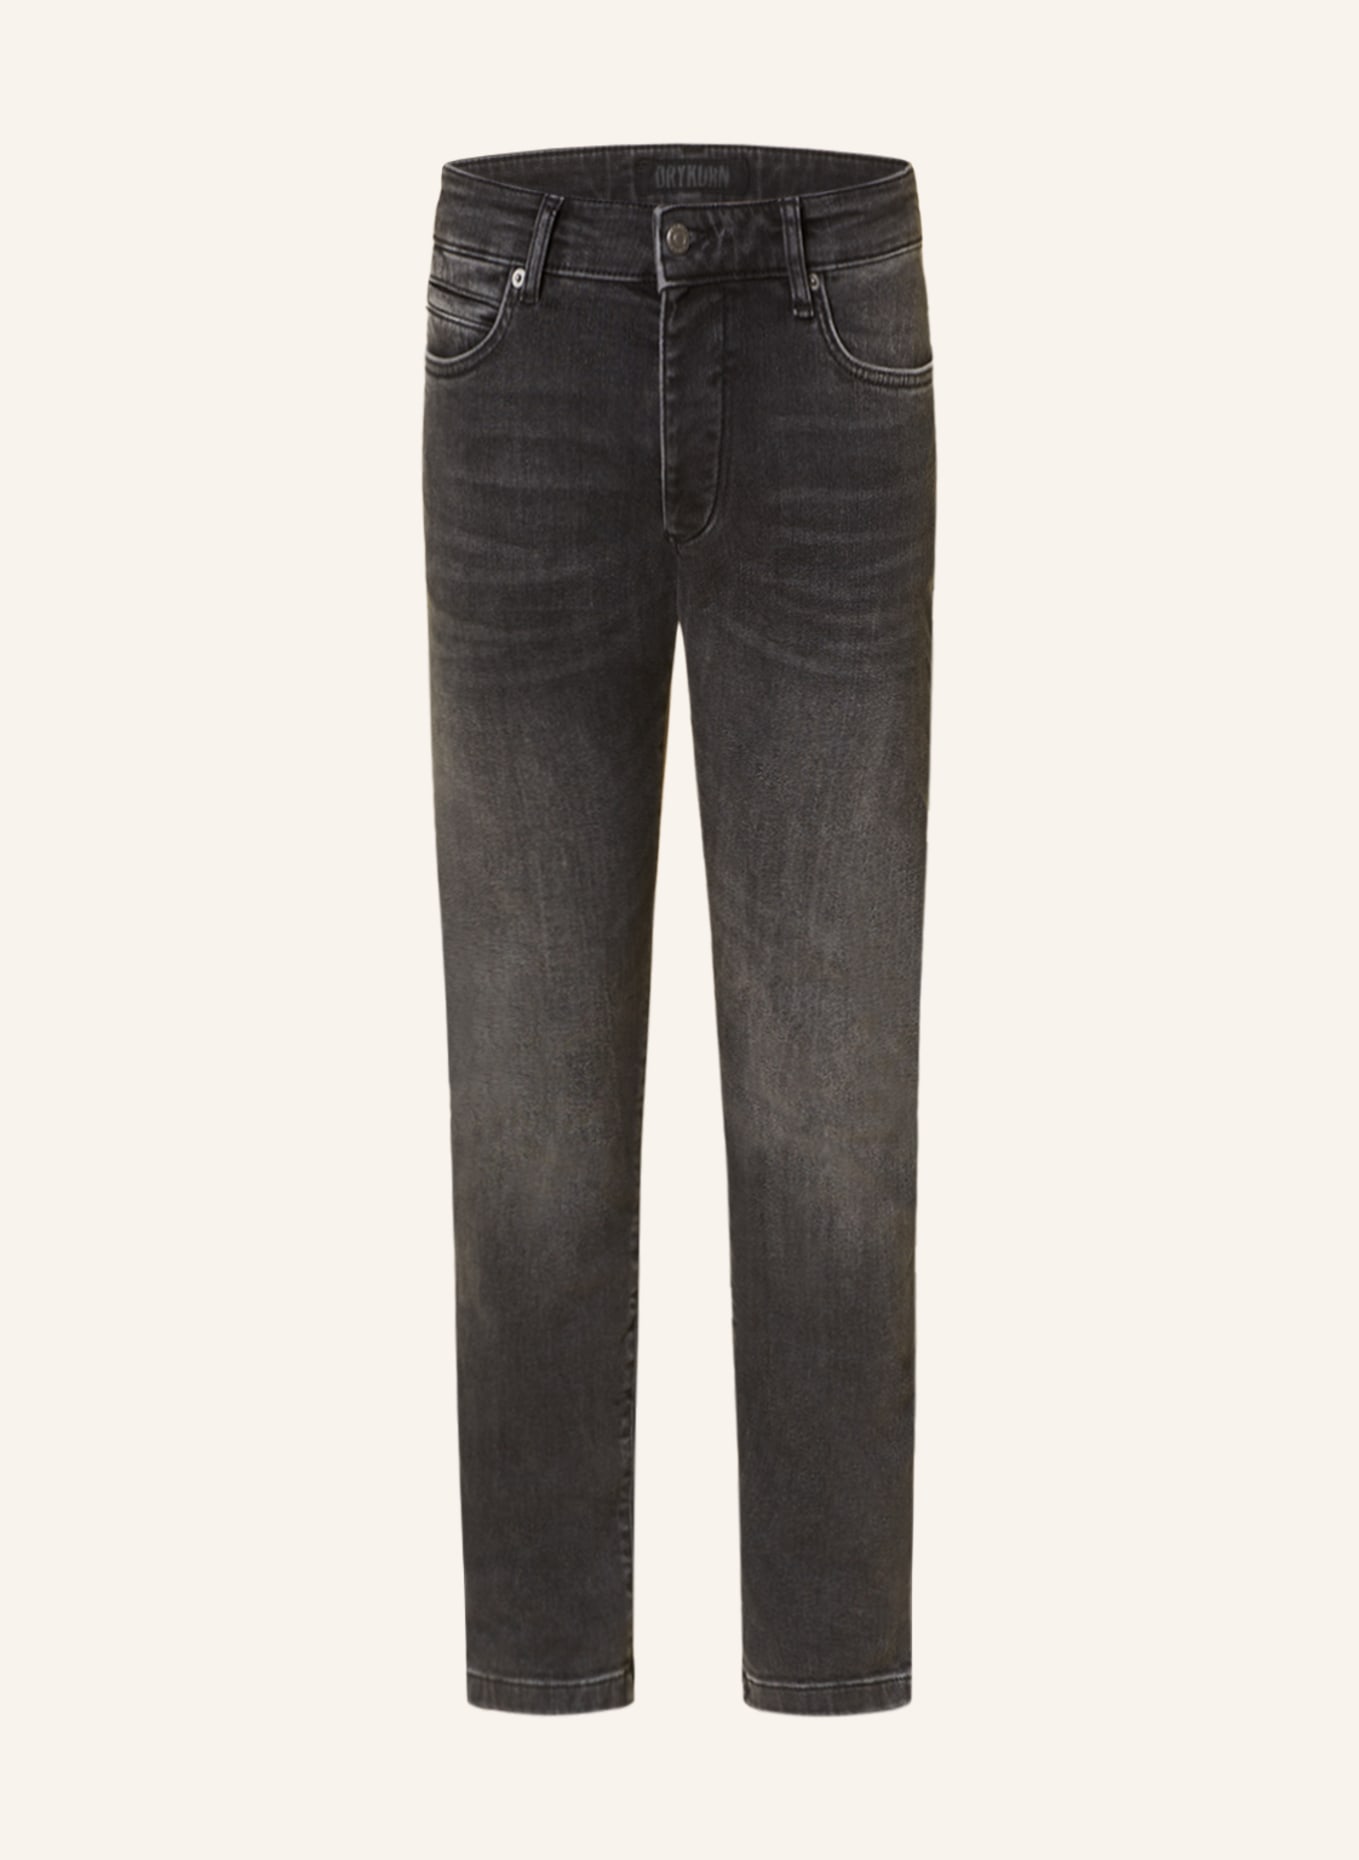 DRYKORN Jeans JAZ Skinny Fit, Farbe: 6110 grau (Bild 1)